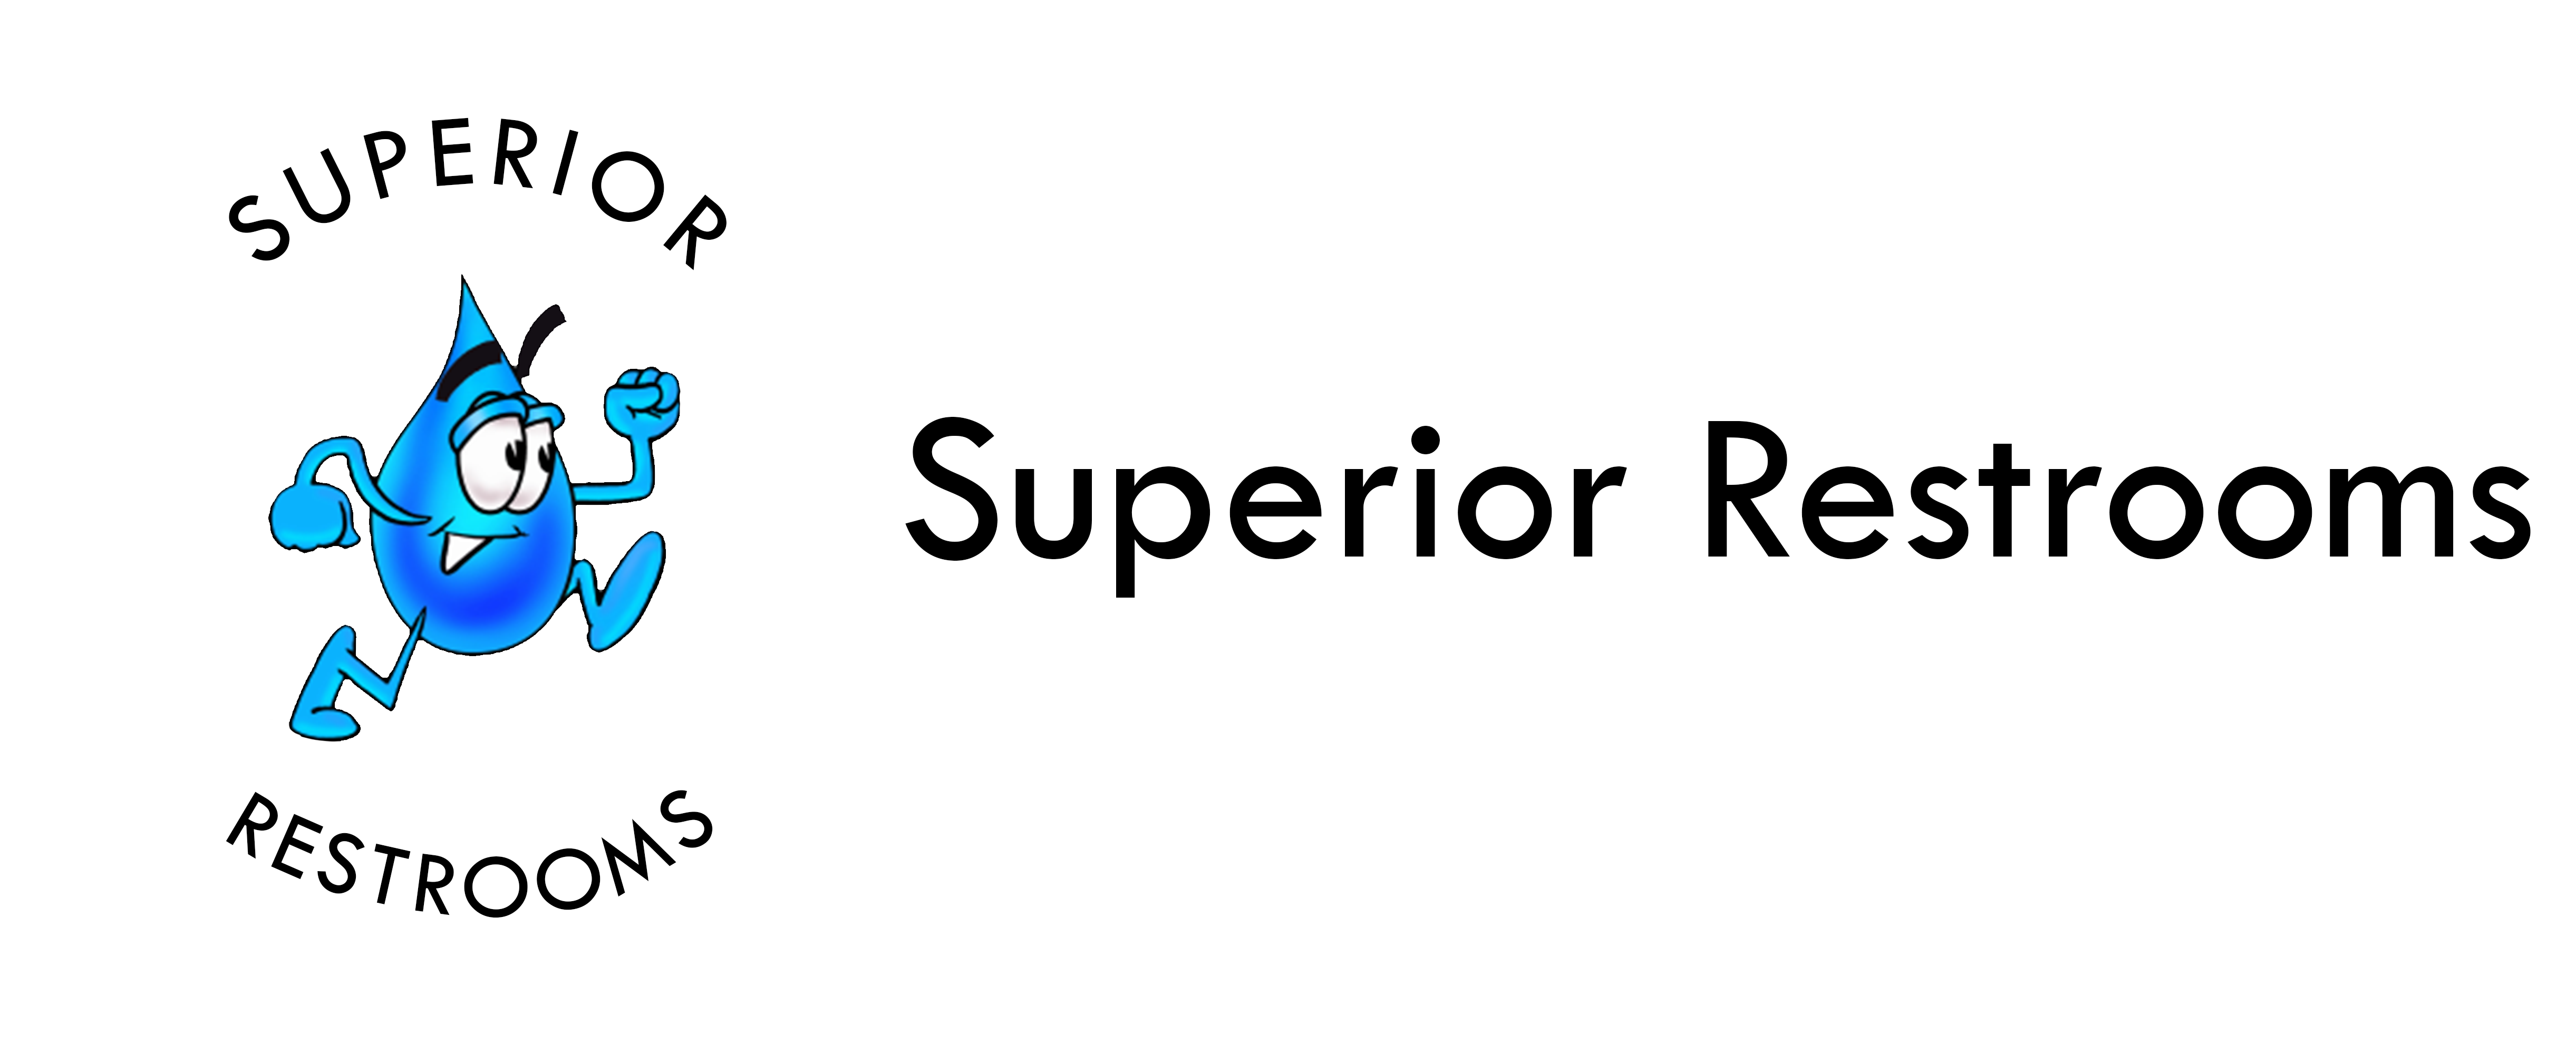 Superior Rest Rooms